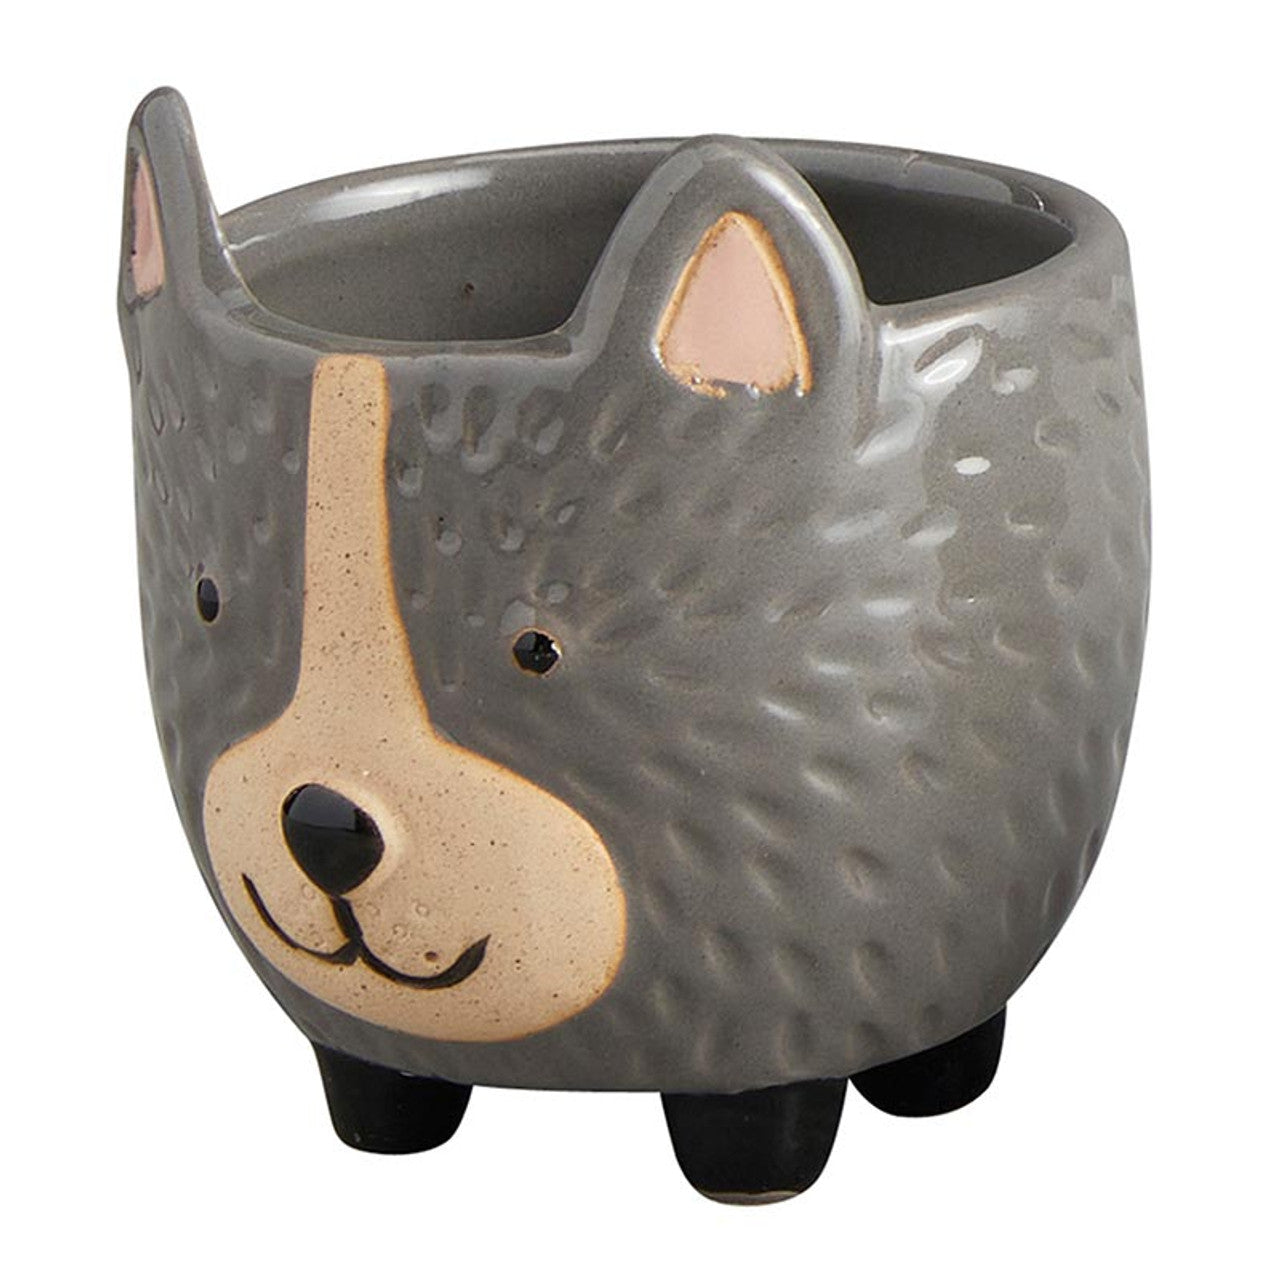 Hedgehog Pot | Decorative Ceramic Planter | 3.25" Tall